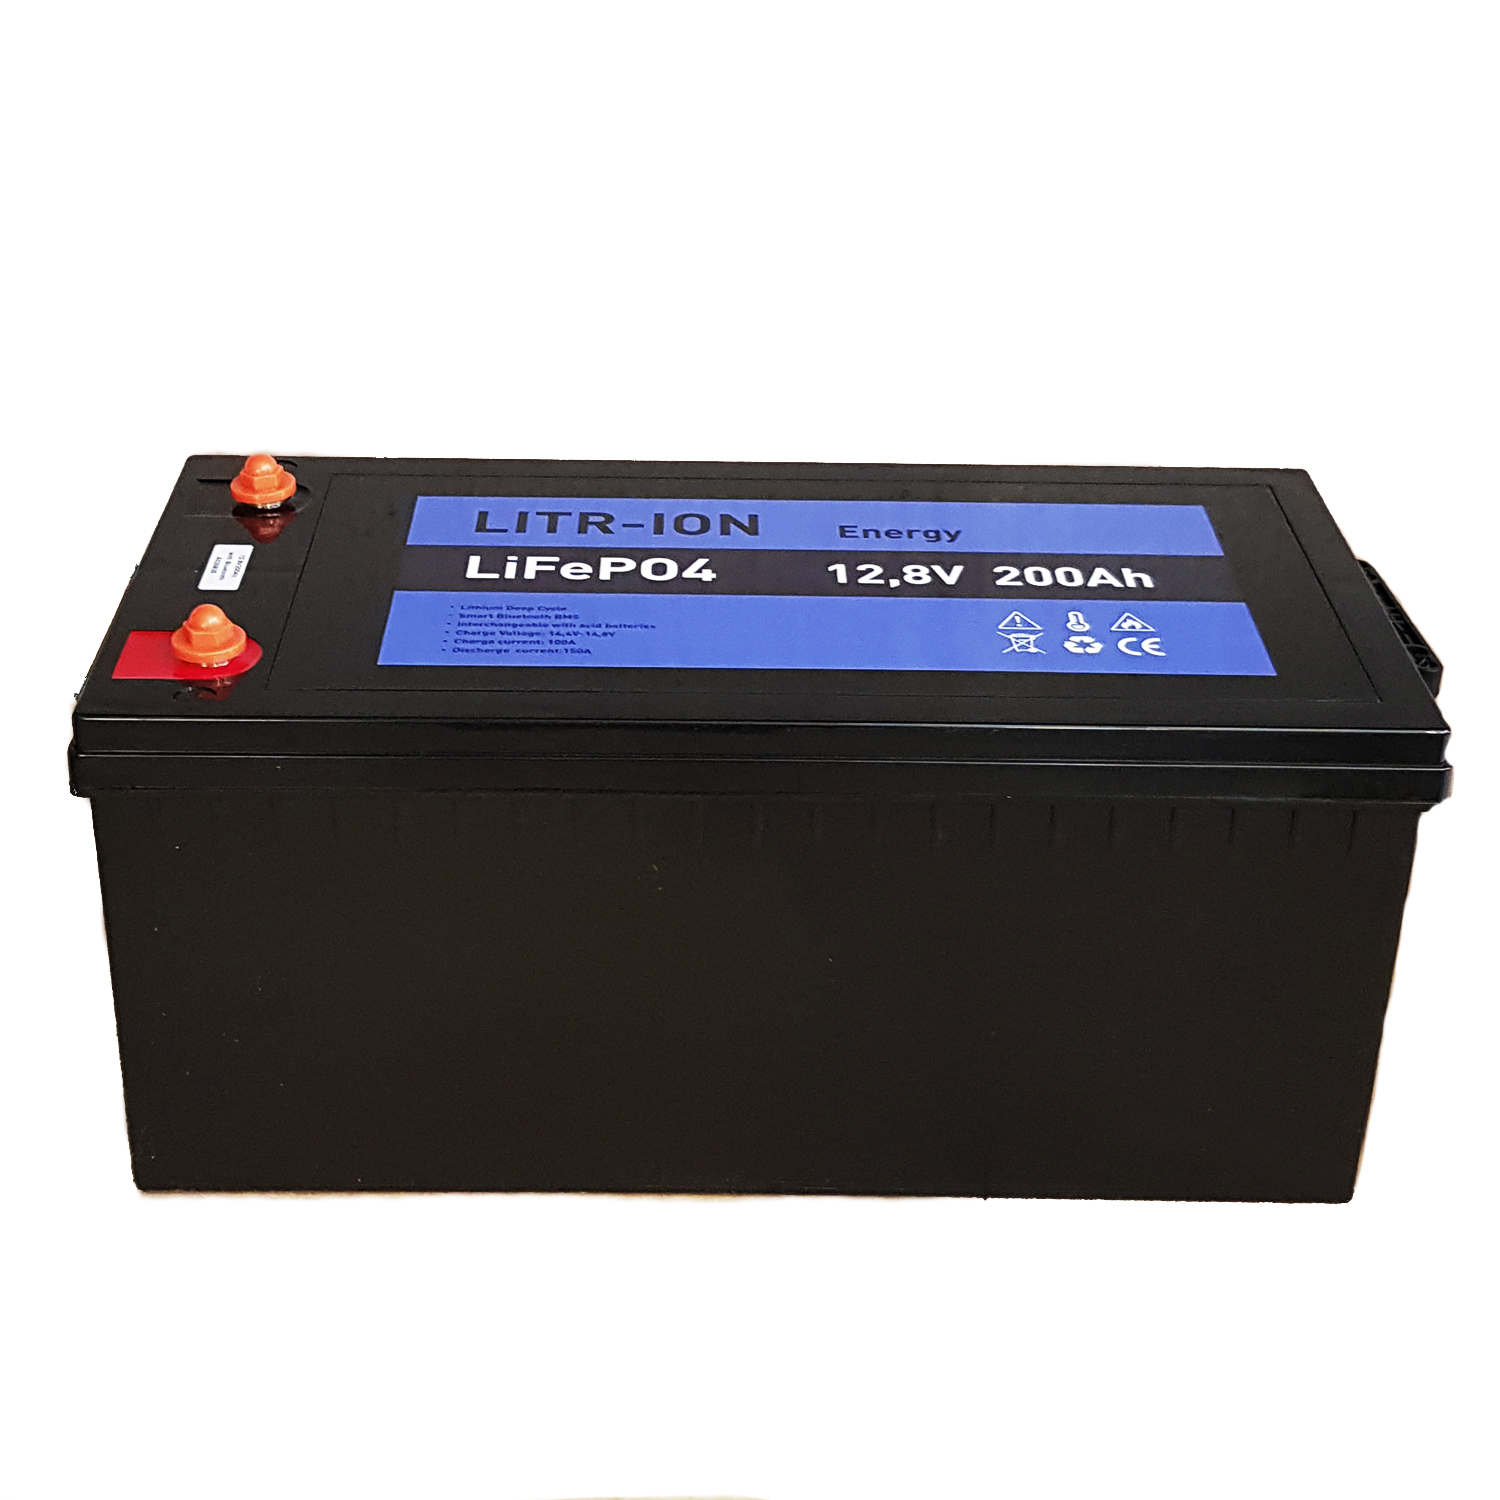 Batería de litio (LiFePO4) 12.8v 100Ah Smart BMS con Bluetooth